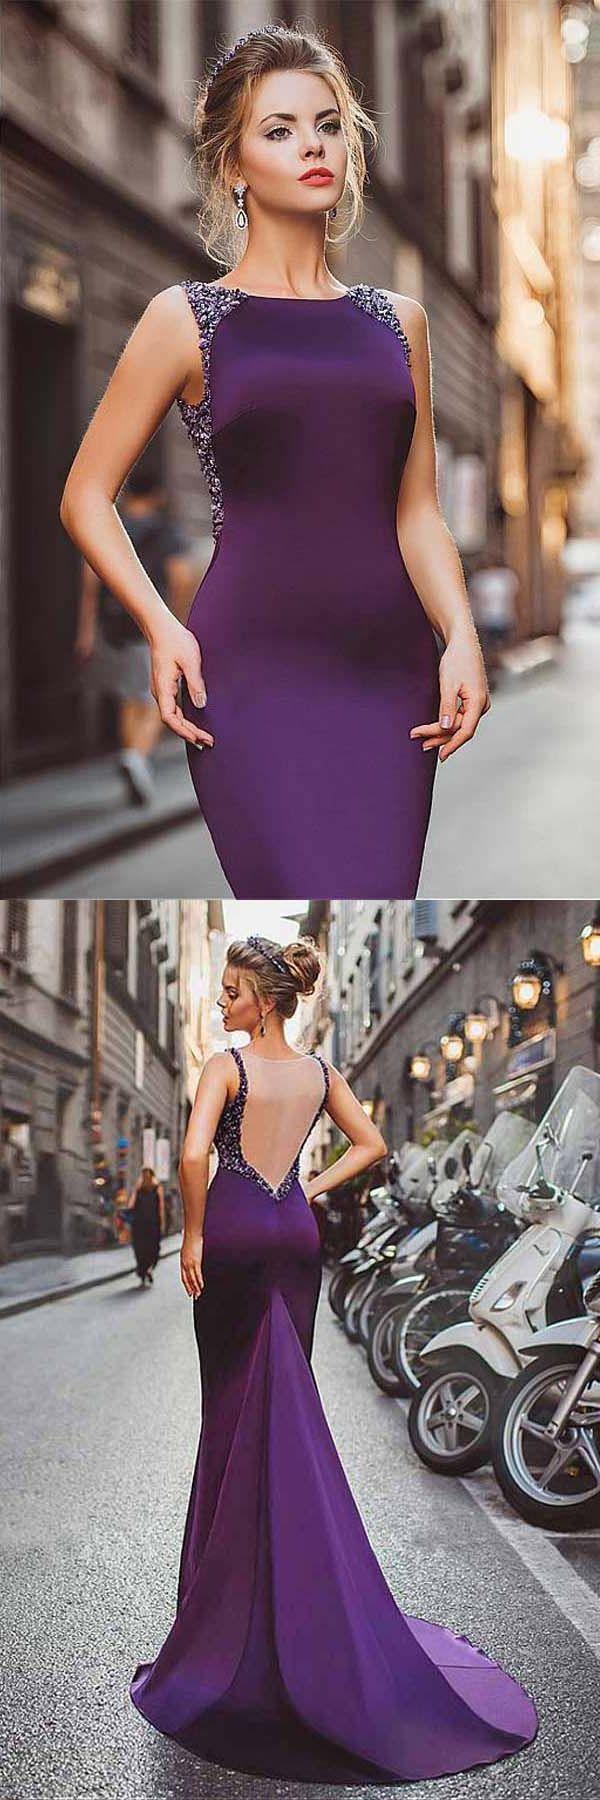 زفاف - Custom Made Fine Purple Prom Dresses Neckline Satin Purple Mermaid Evening Dresses With Beadings